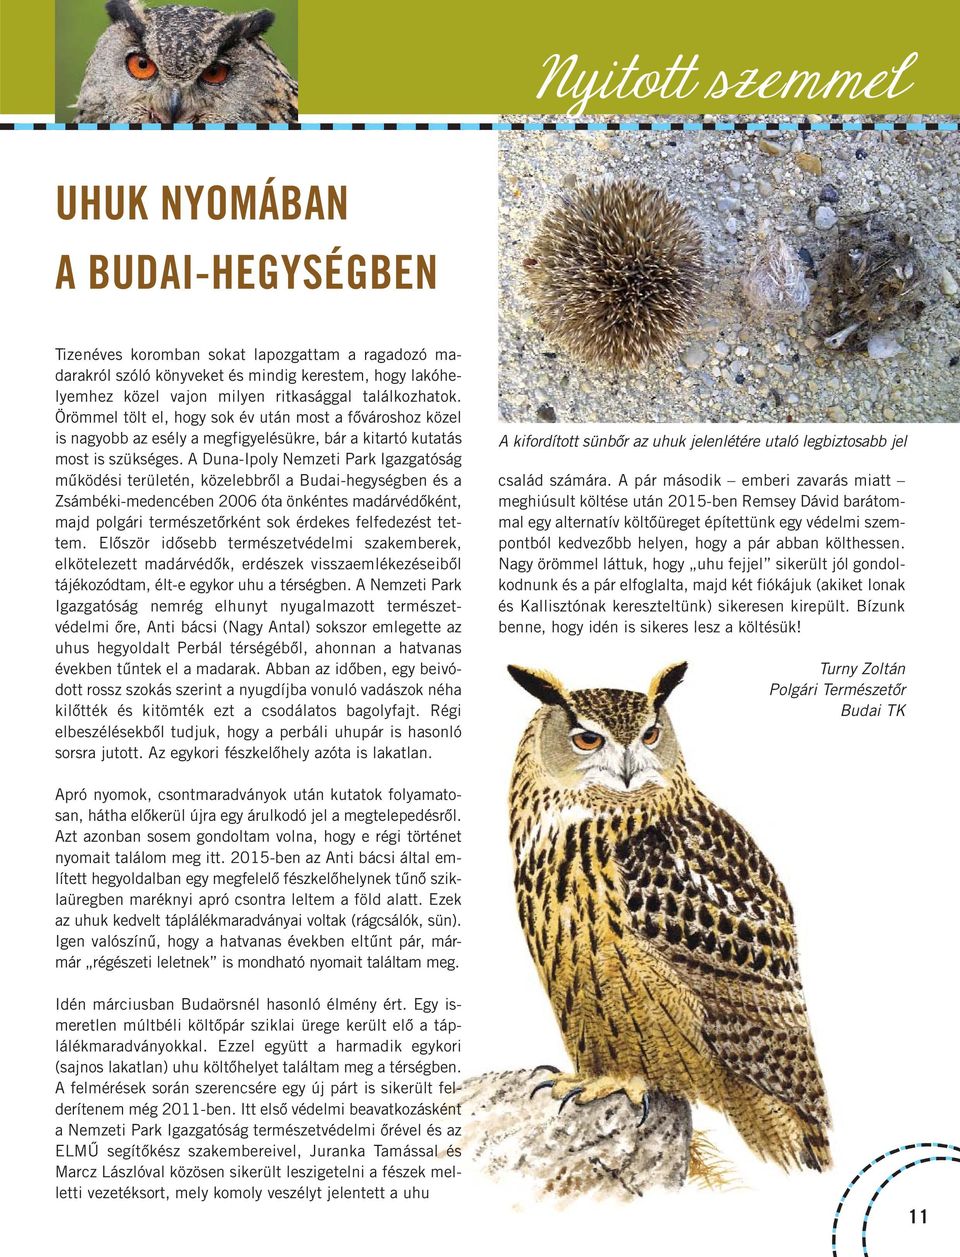 A Duna-Ipoly Nemzeti Park Igazgatóság működési területén, közelebbről a Budai-hegységben és a Zsámbéki-medencében 2006 óta önkéntes madárvédőként, majd polgári természetőrként sok érdekes felfedezést